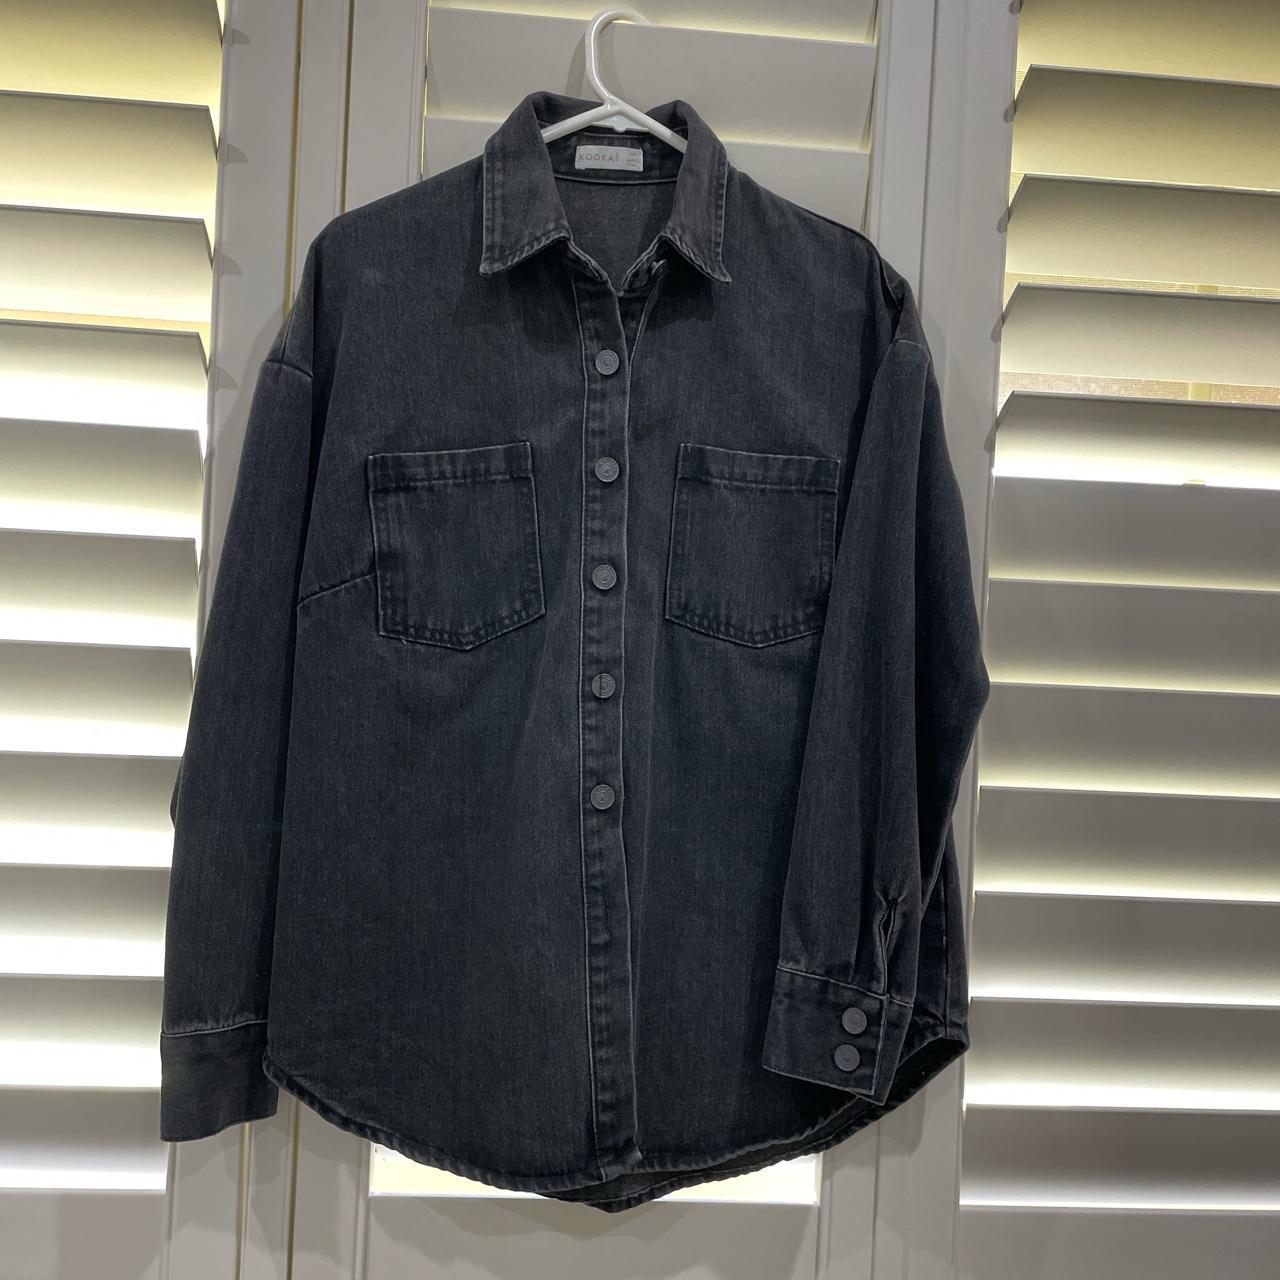 Kookai black denim shirt Size 34 Brand new without... - Depop